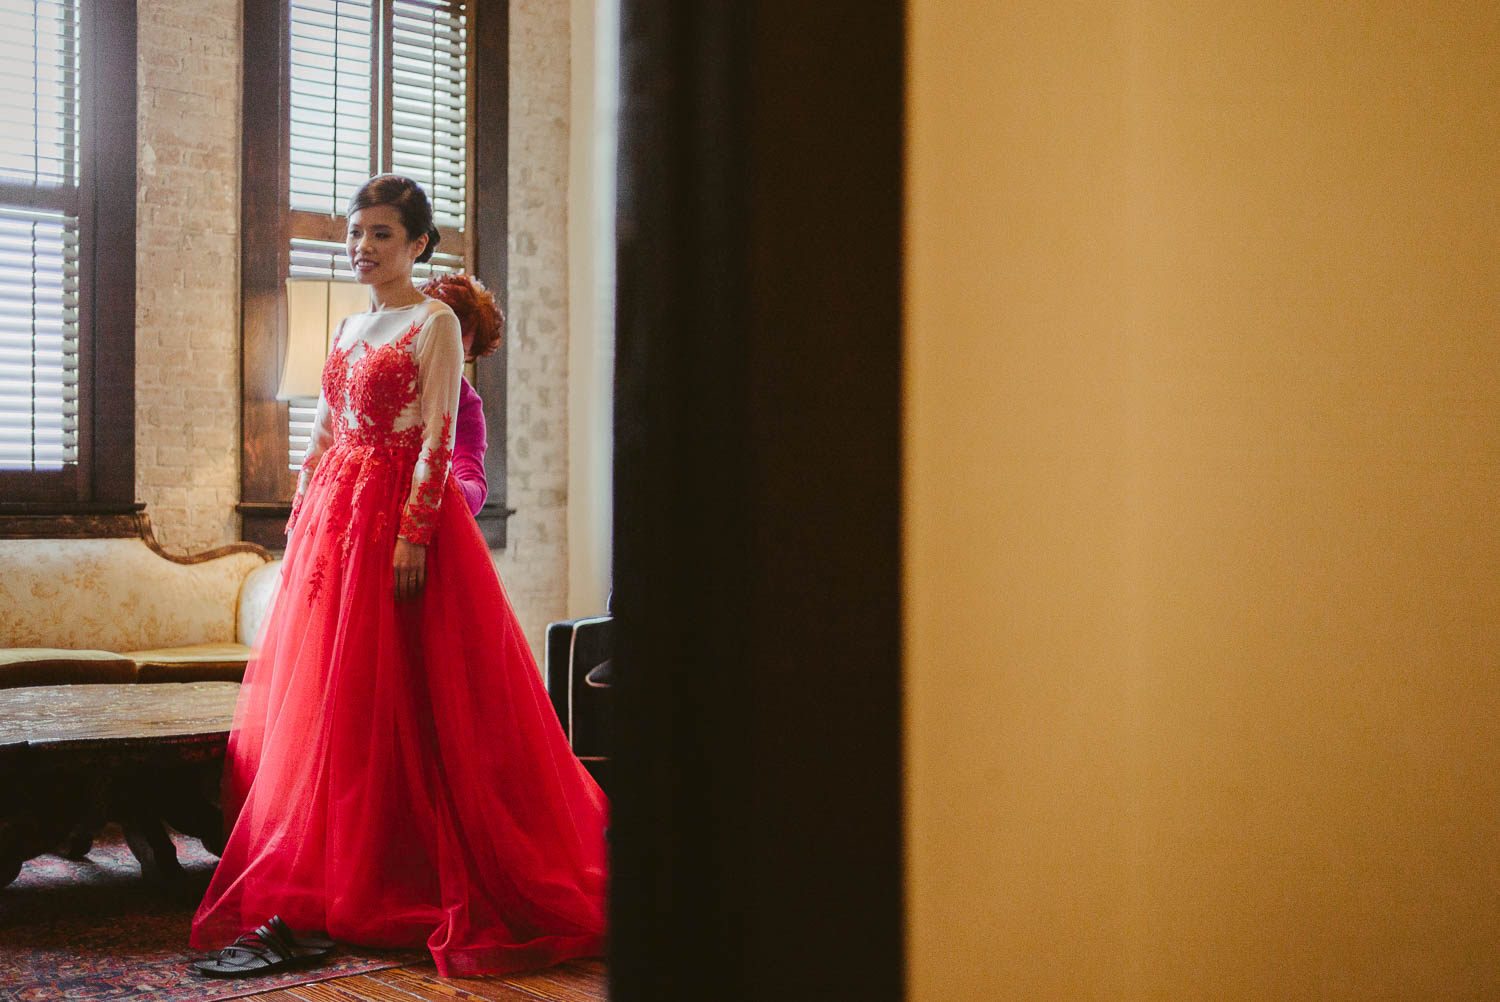 Bride in red dress captured through door frame at Hotel Havana, San Antonio, Texas